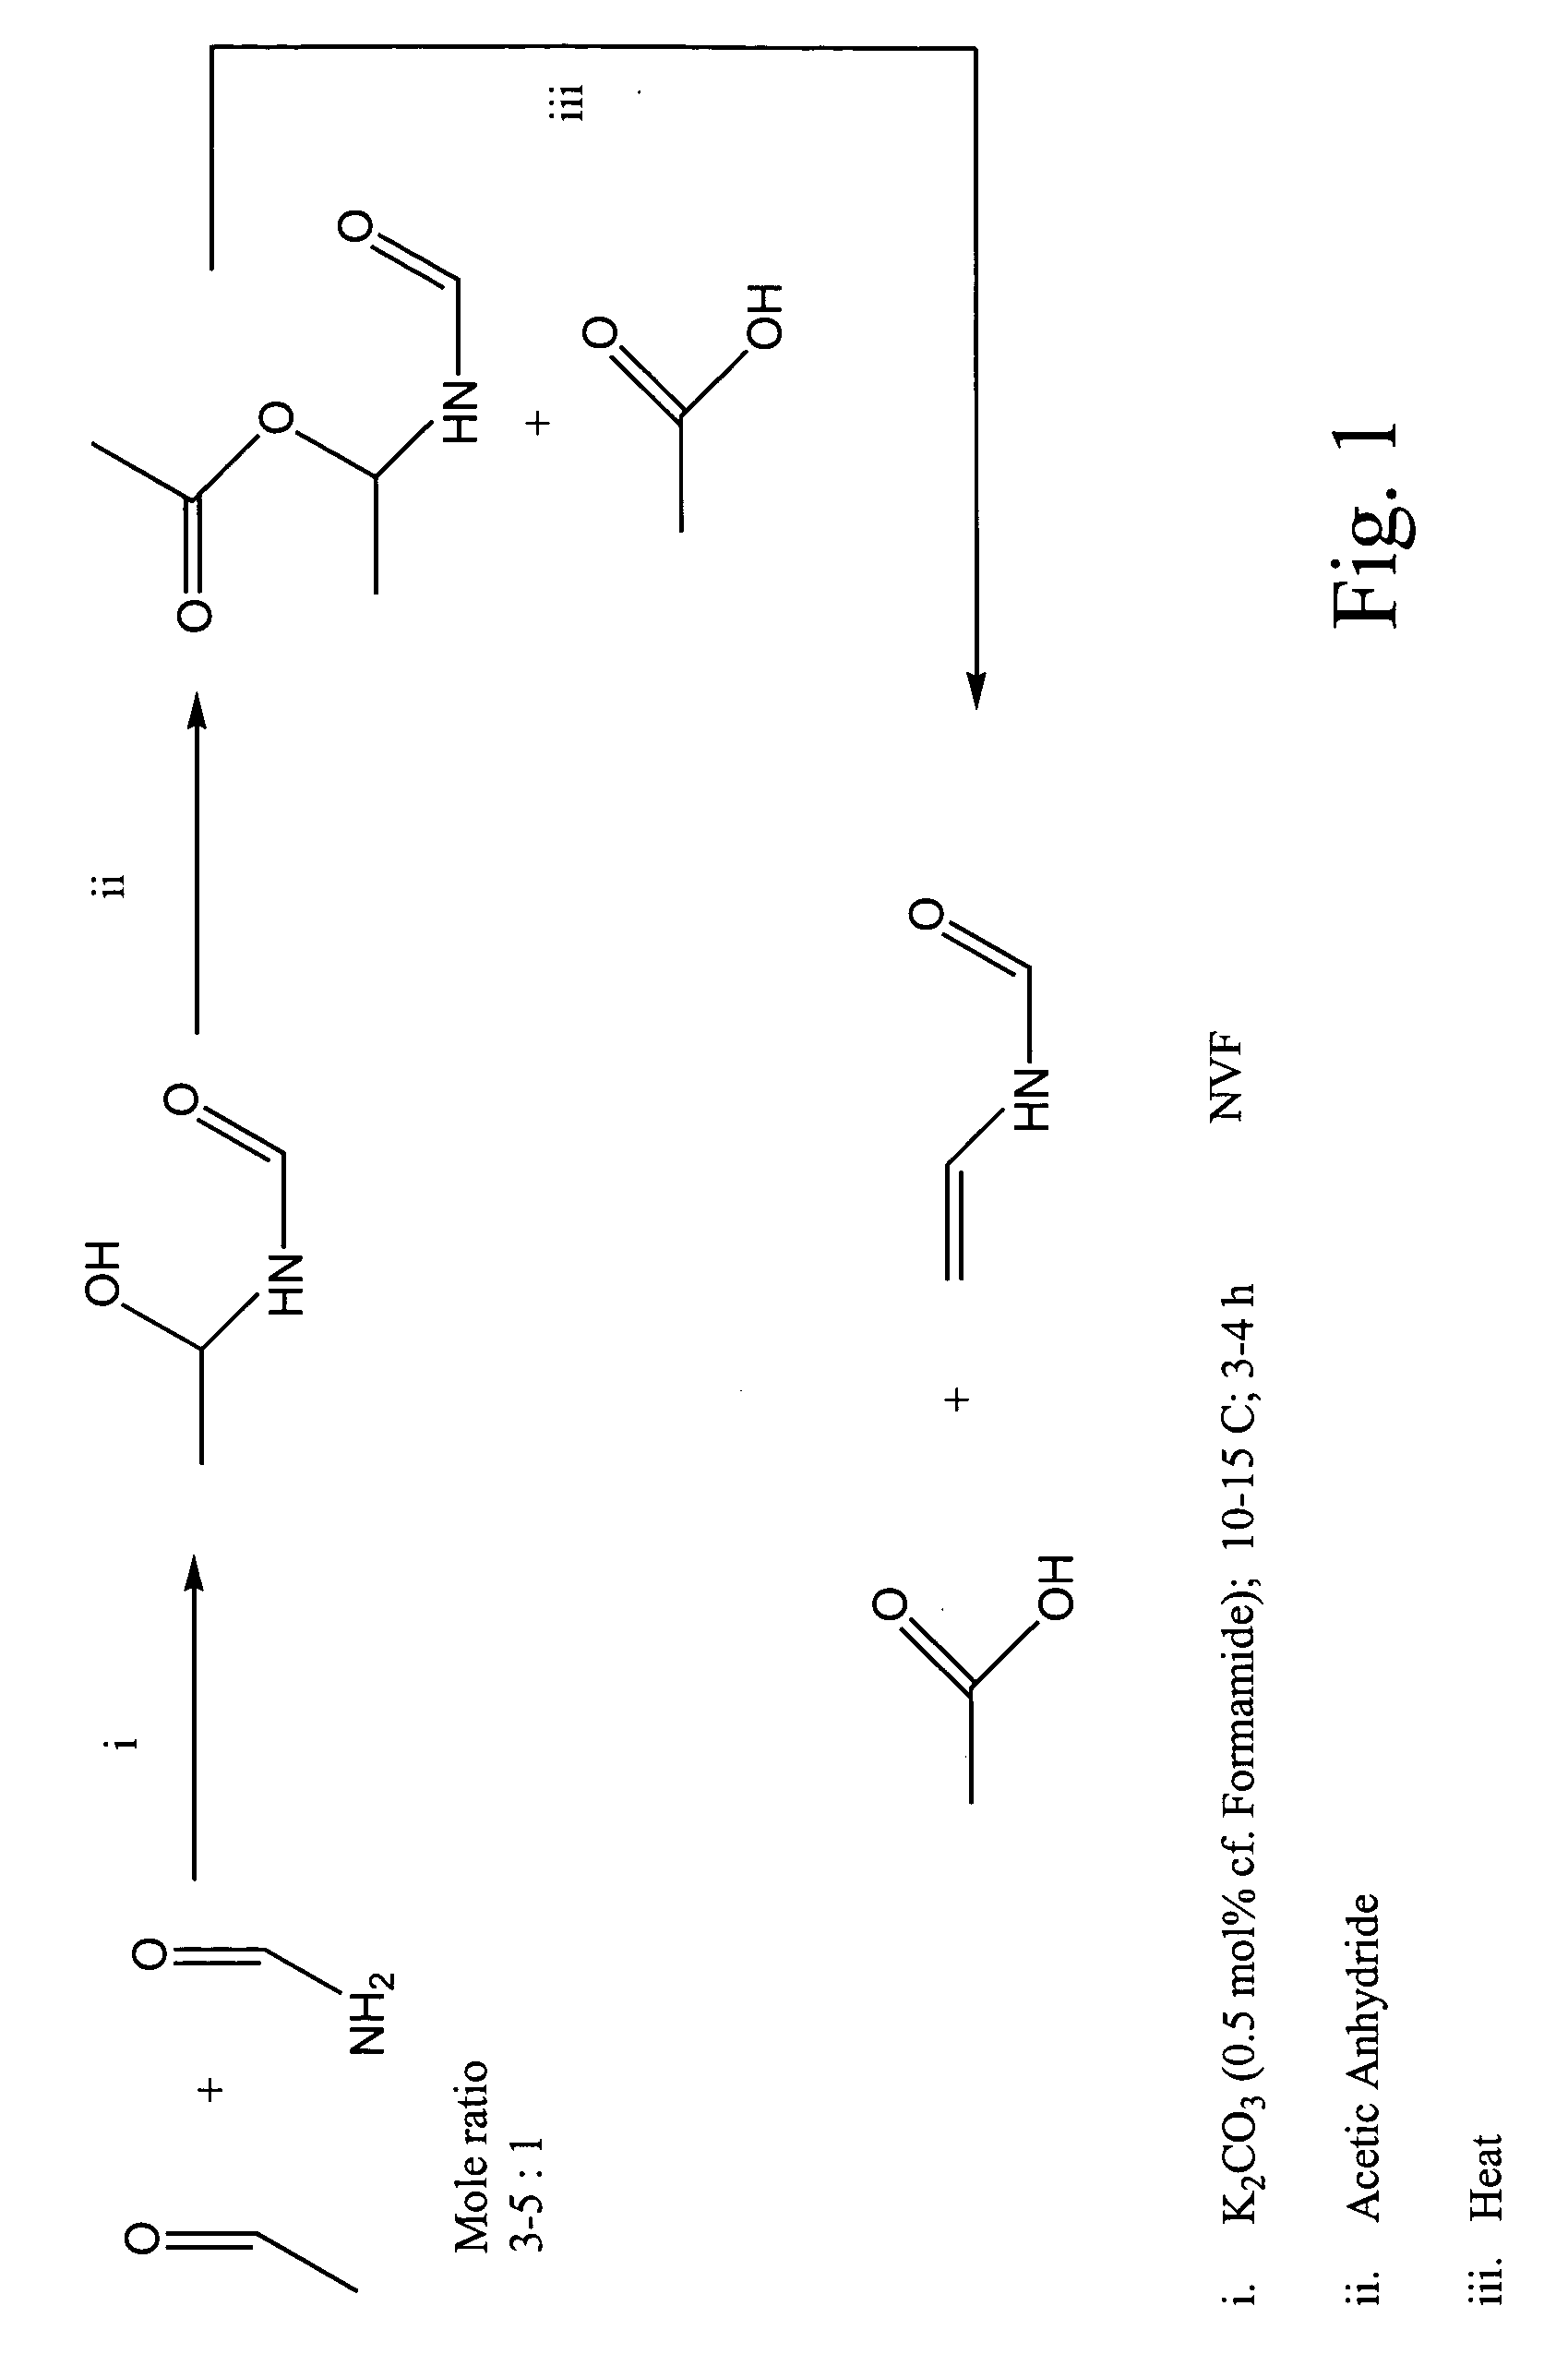 Synthesis of N-vinyl formamide